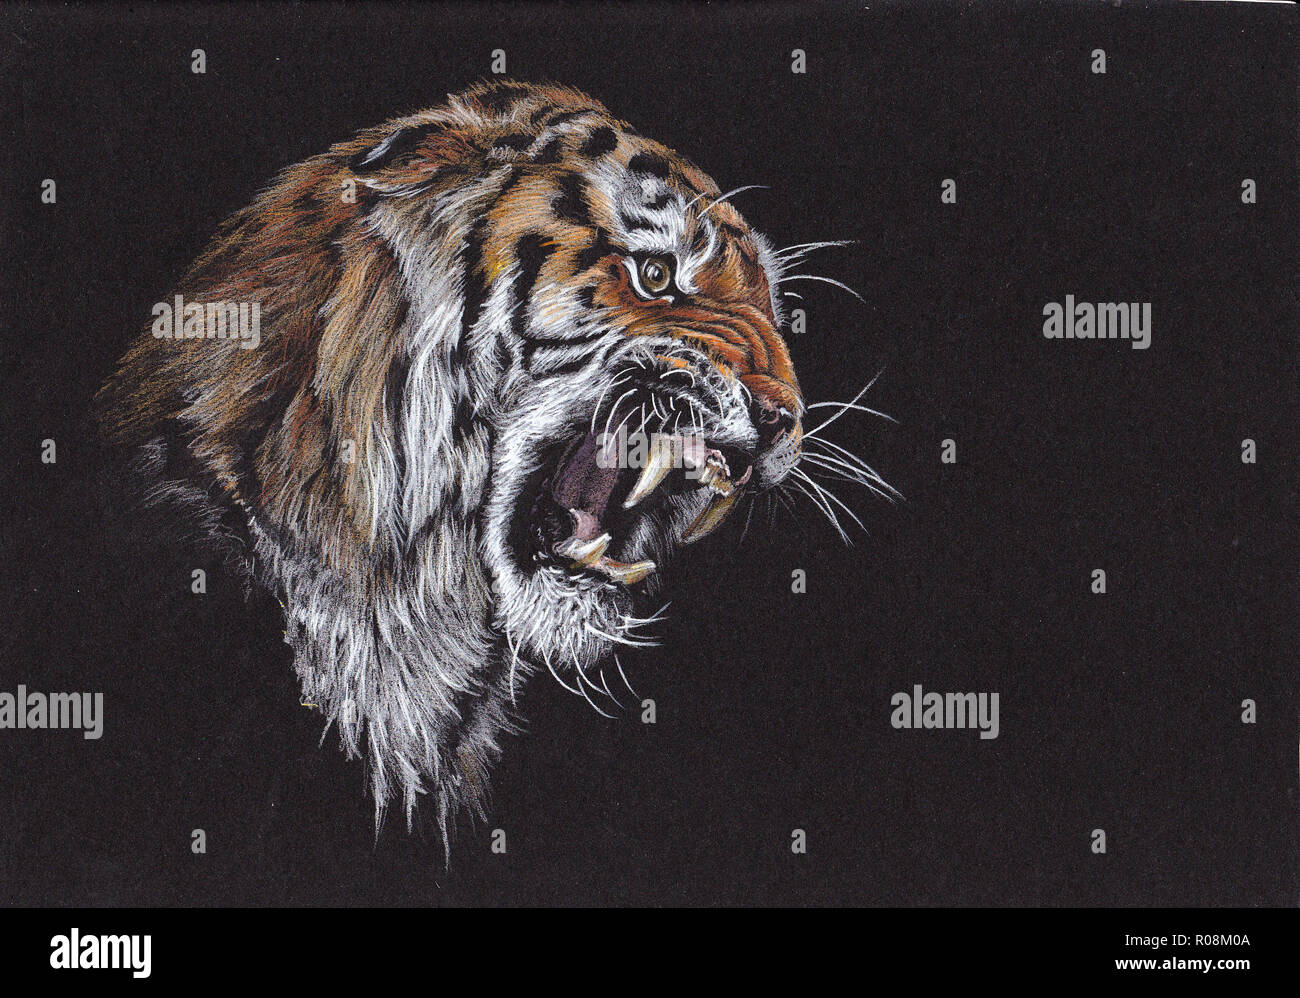 Abbildung des großen Tigers. Tiger brüllendes Porträt. Handgefertigte Zeichnung. Stockfoto